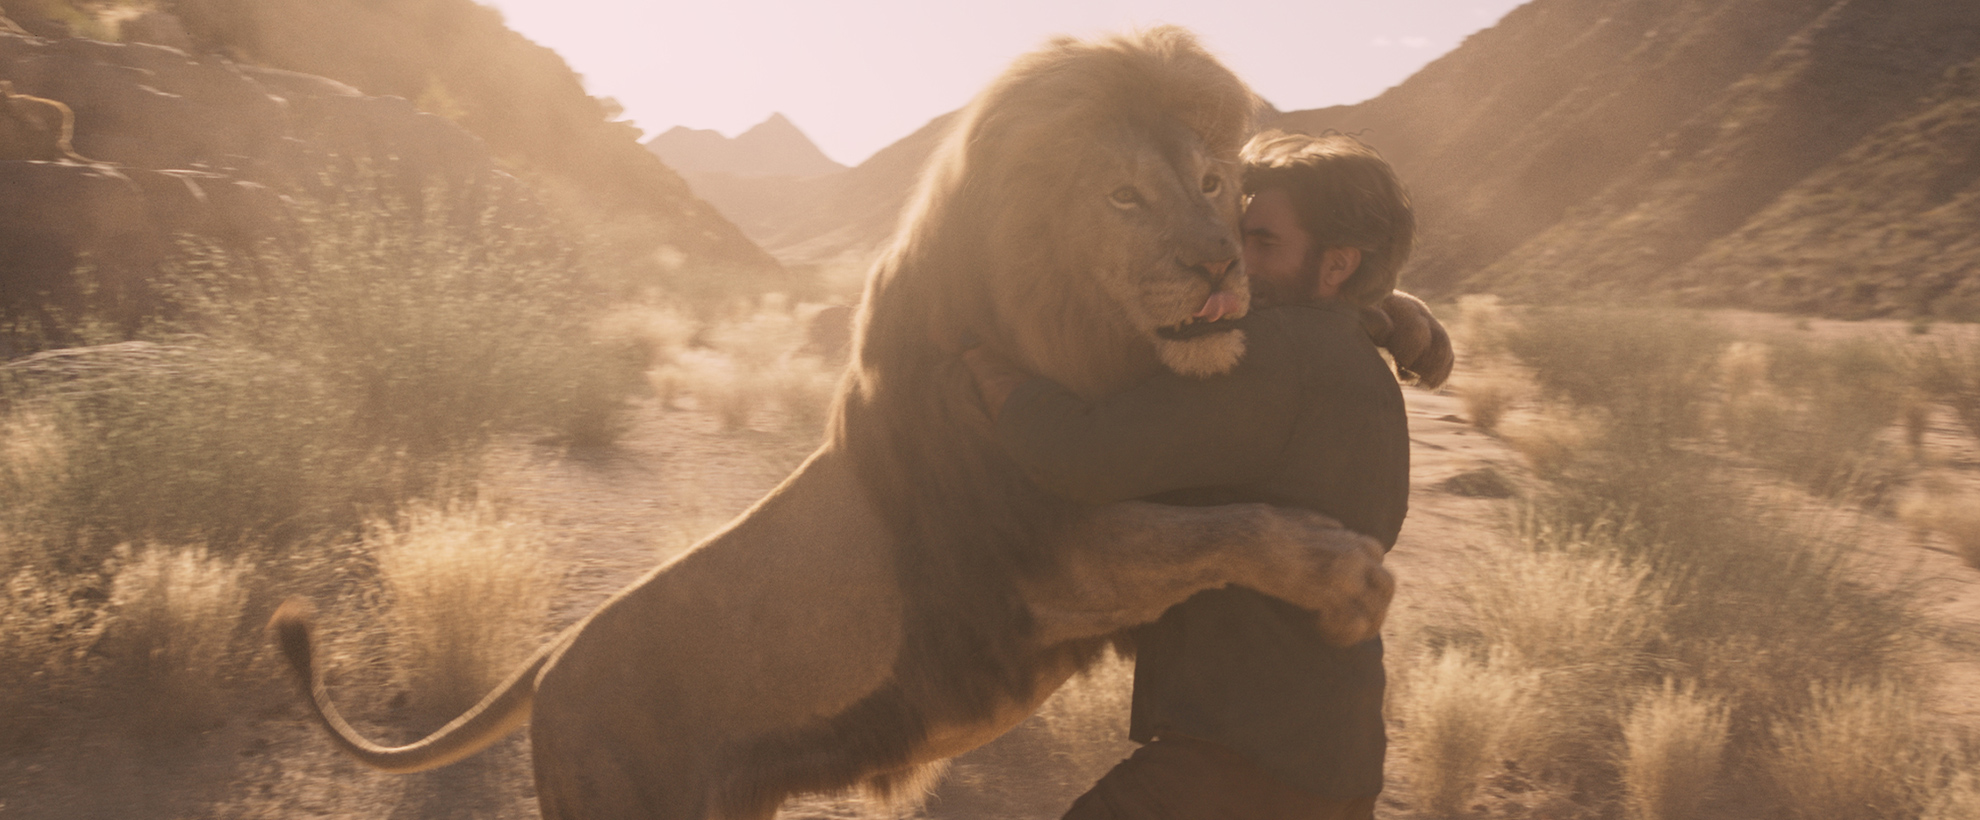 A lion embraces a man